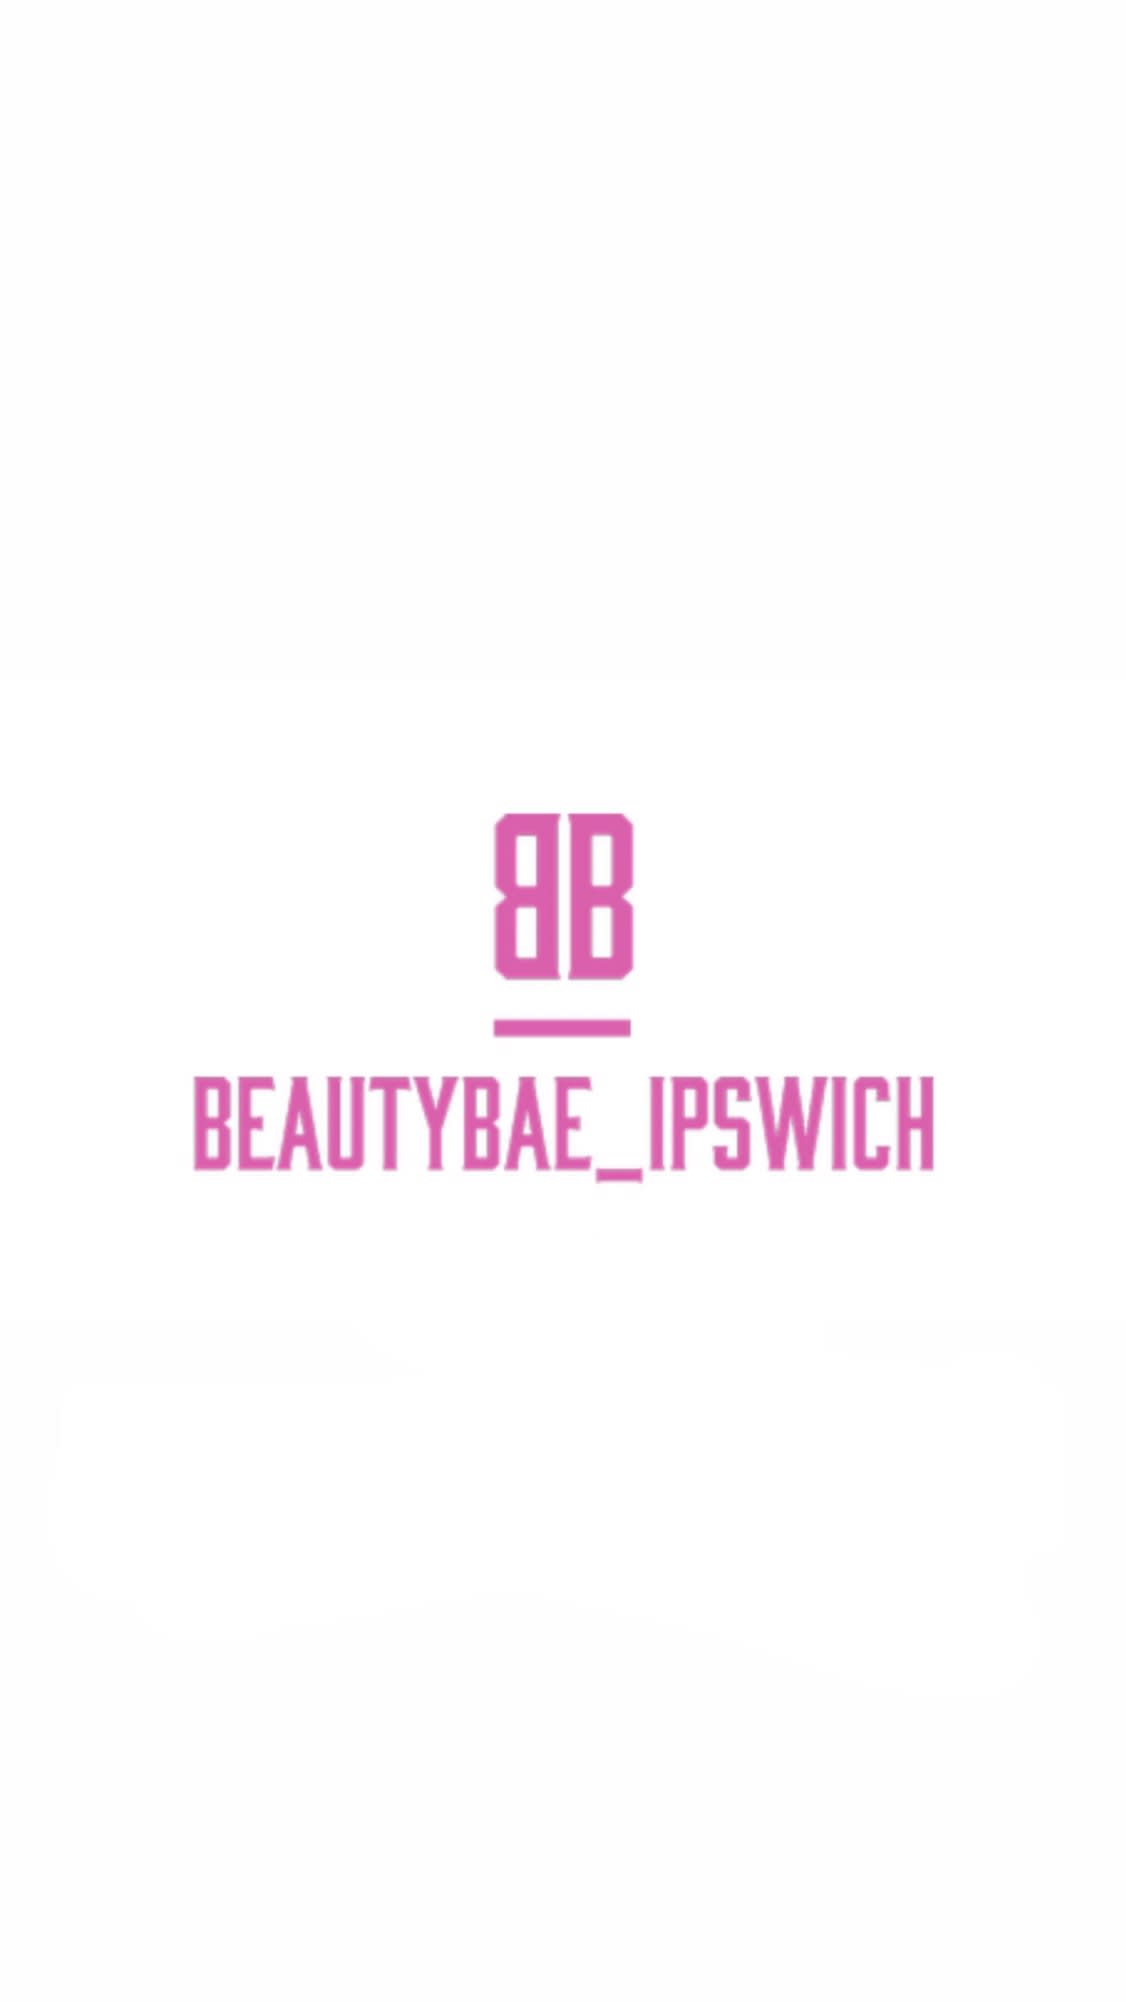 Beauty Bae Ipswich